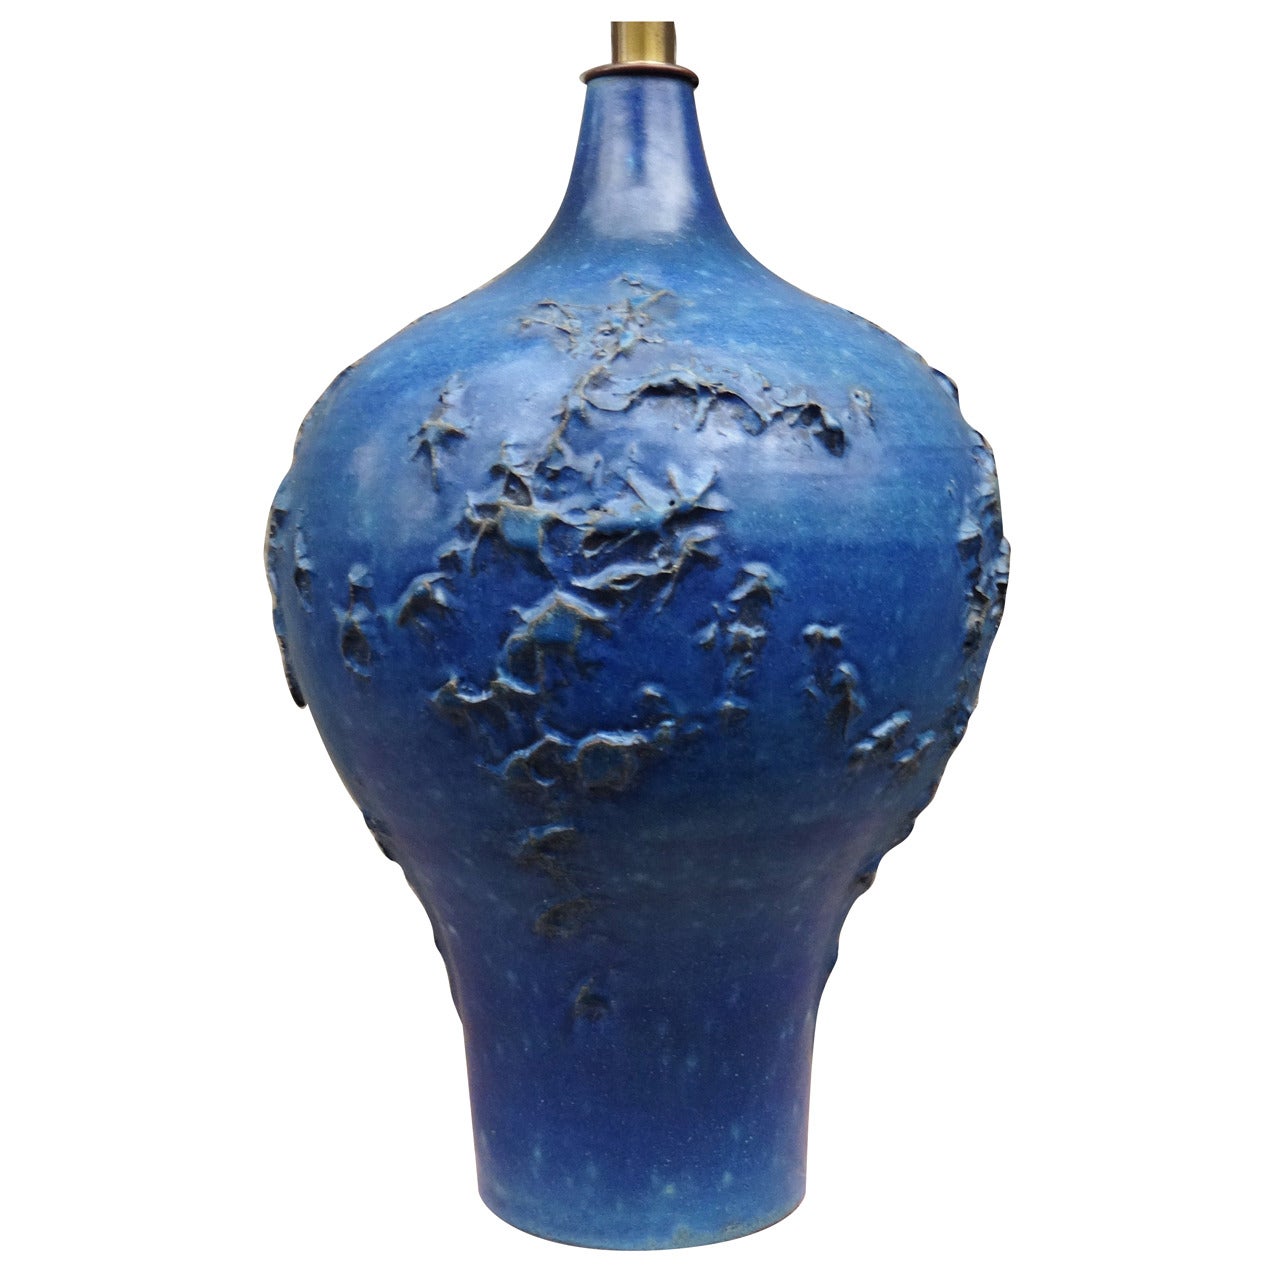 Vivid Blue 1950's Lee Rosen for Design Technics Art Pottery Table Lamp